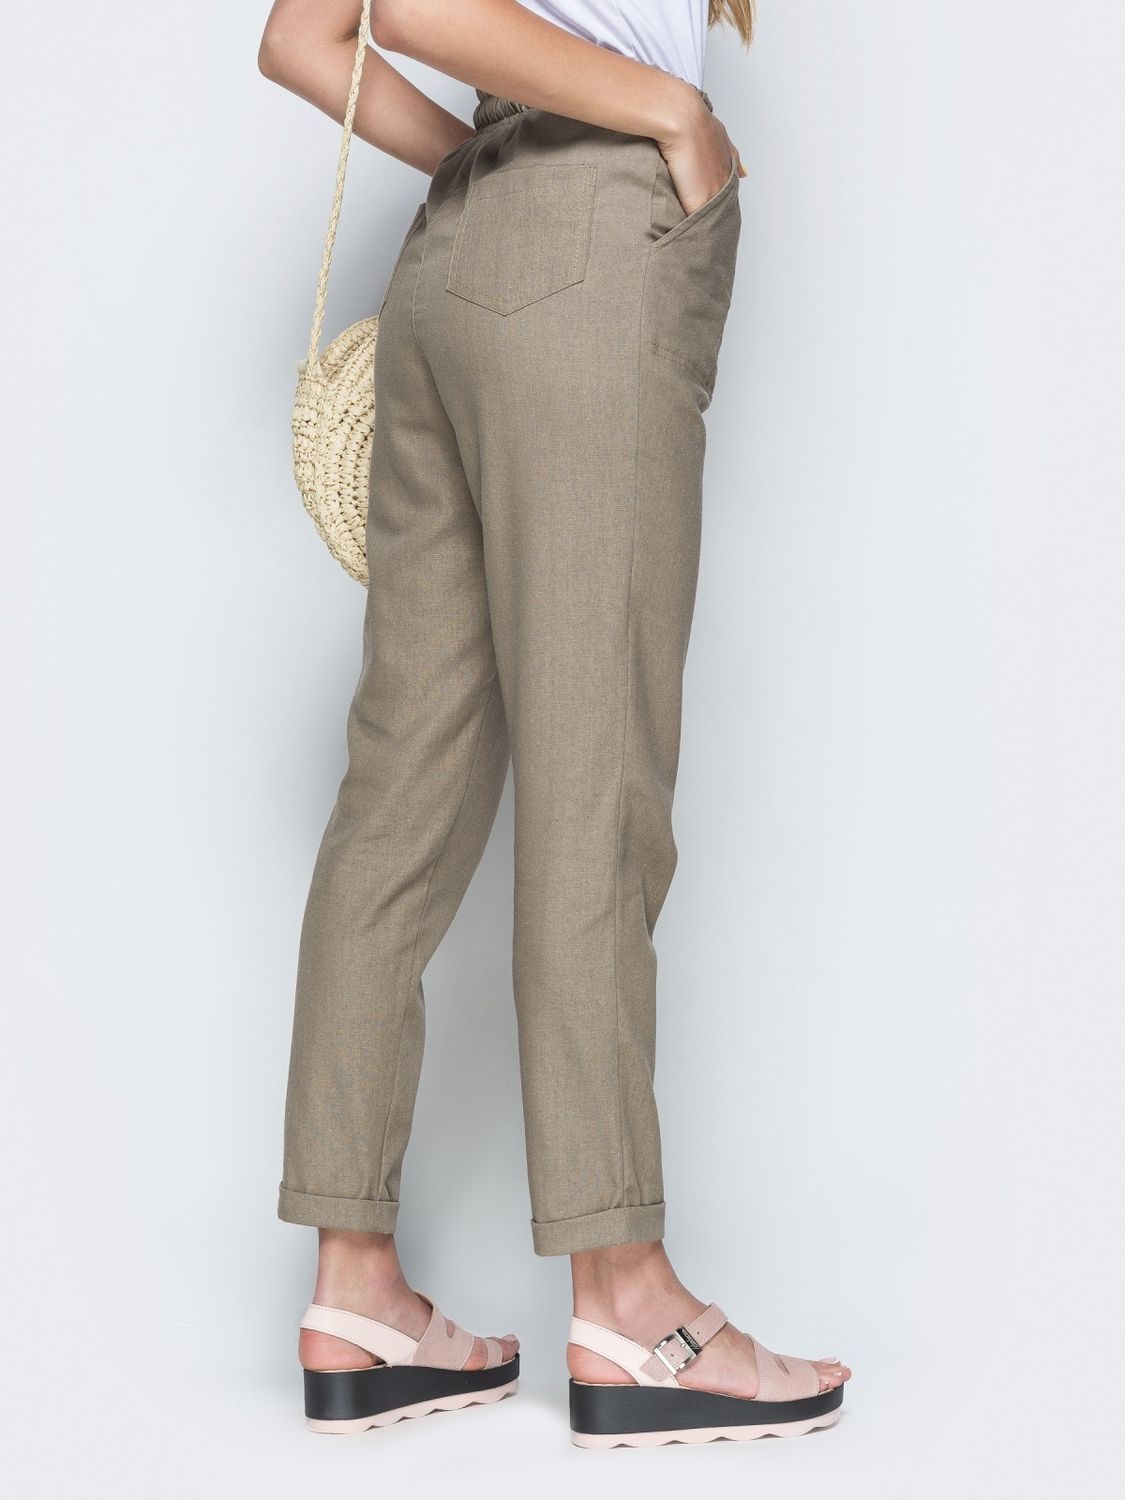 Льняные брюки на лето бежевого цвета - фото